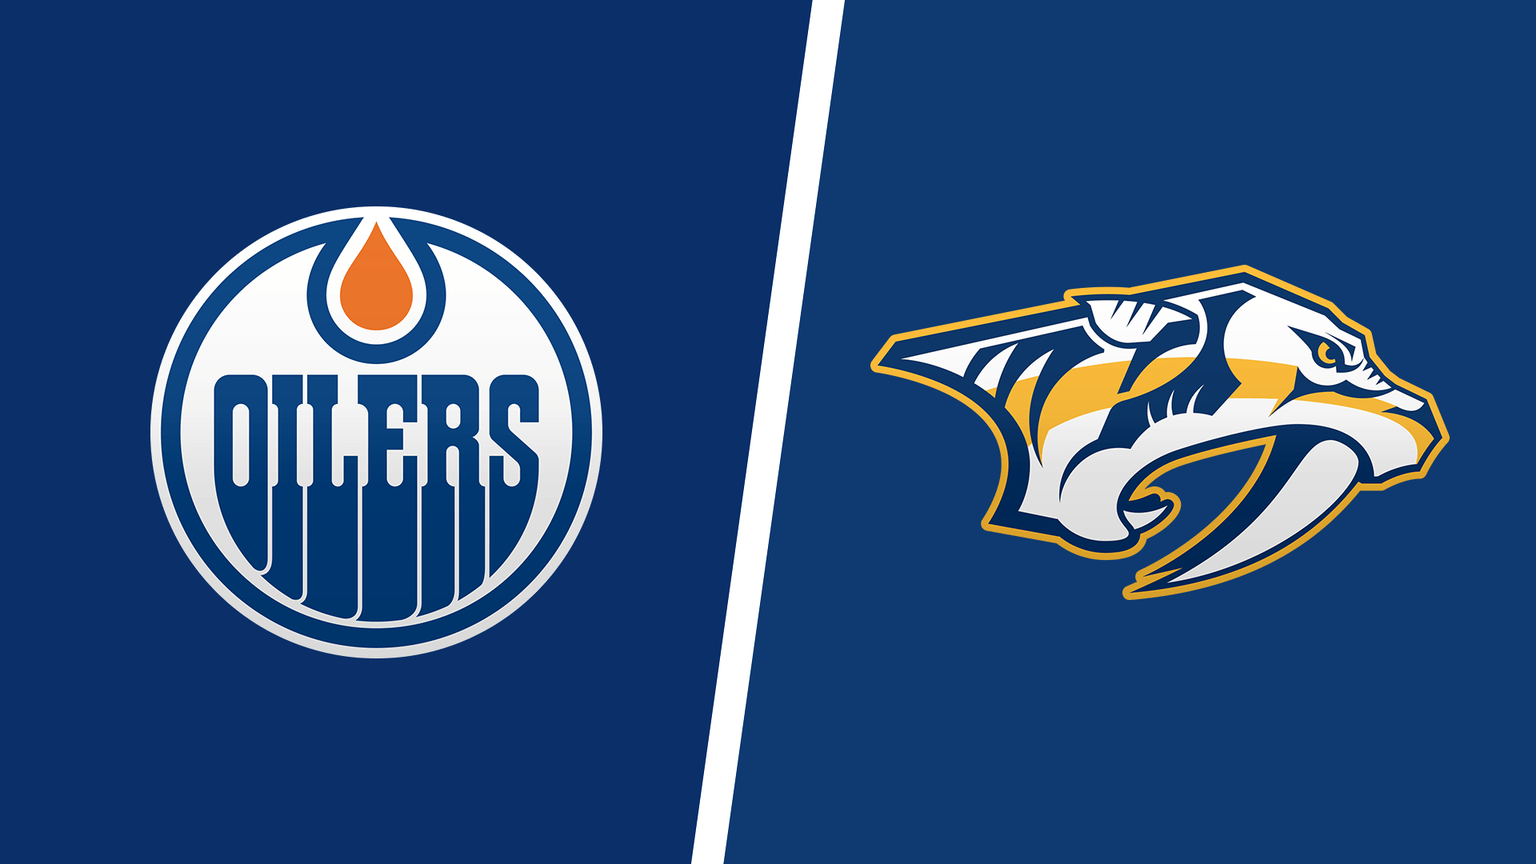 How to Watch Nashville Predators vs. Edmonton Oilers Game Live Online